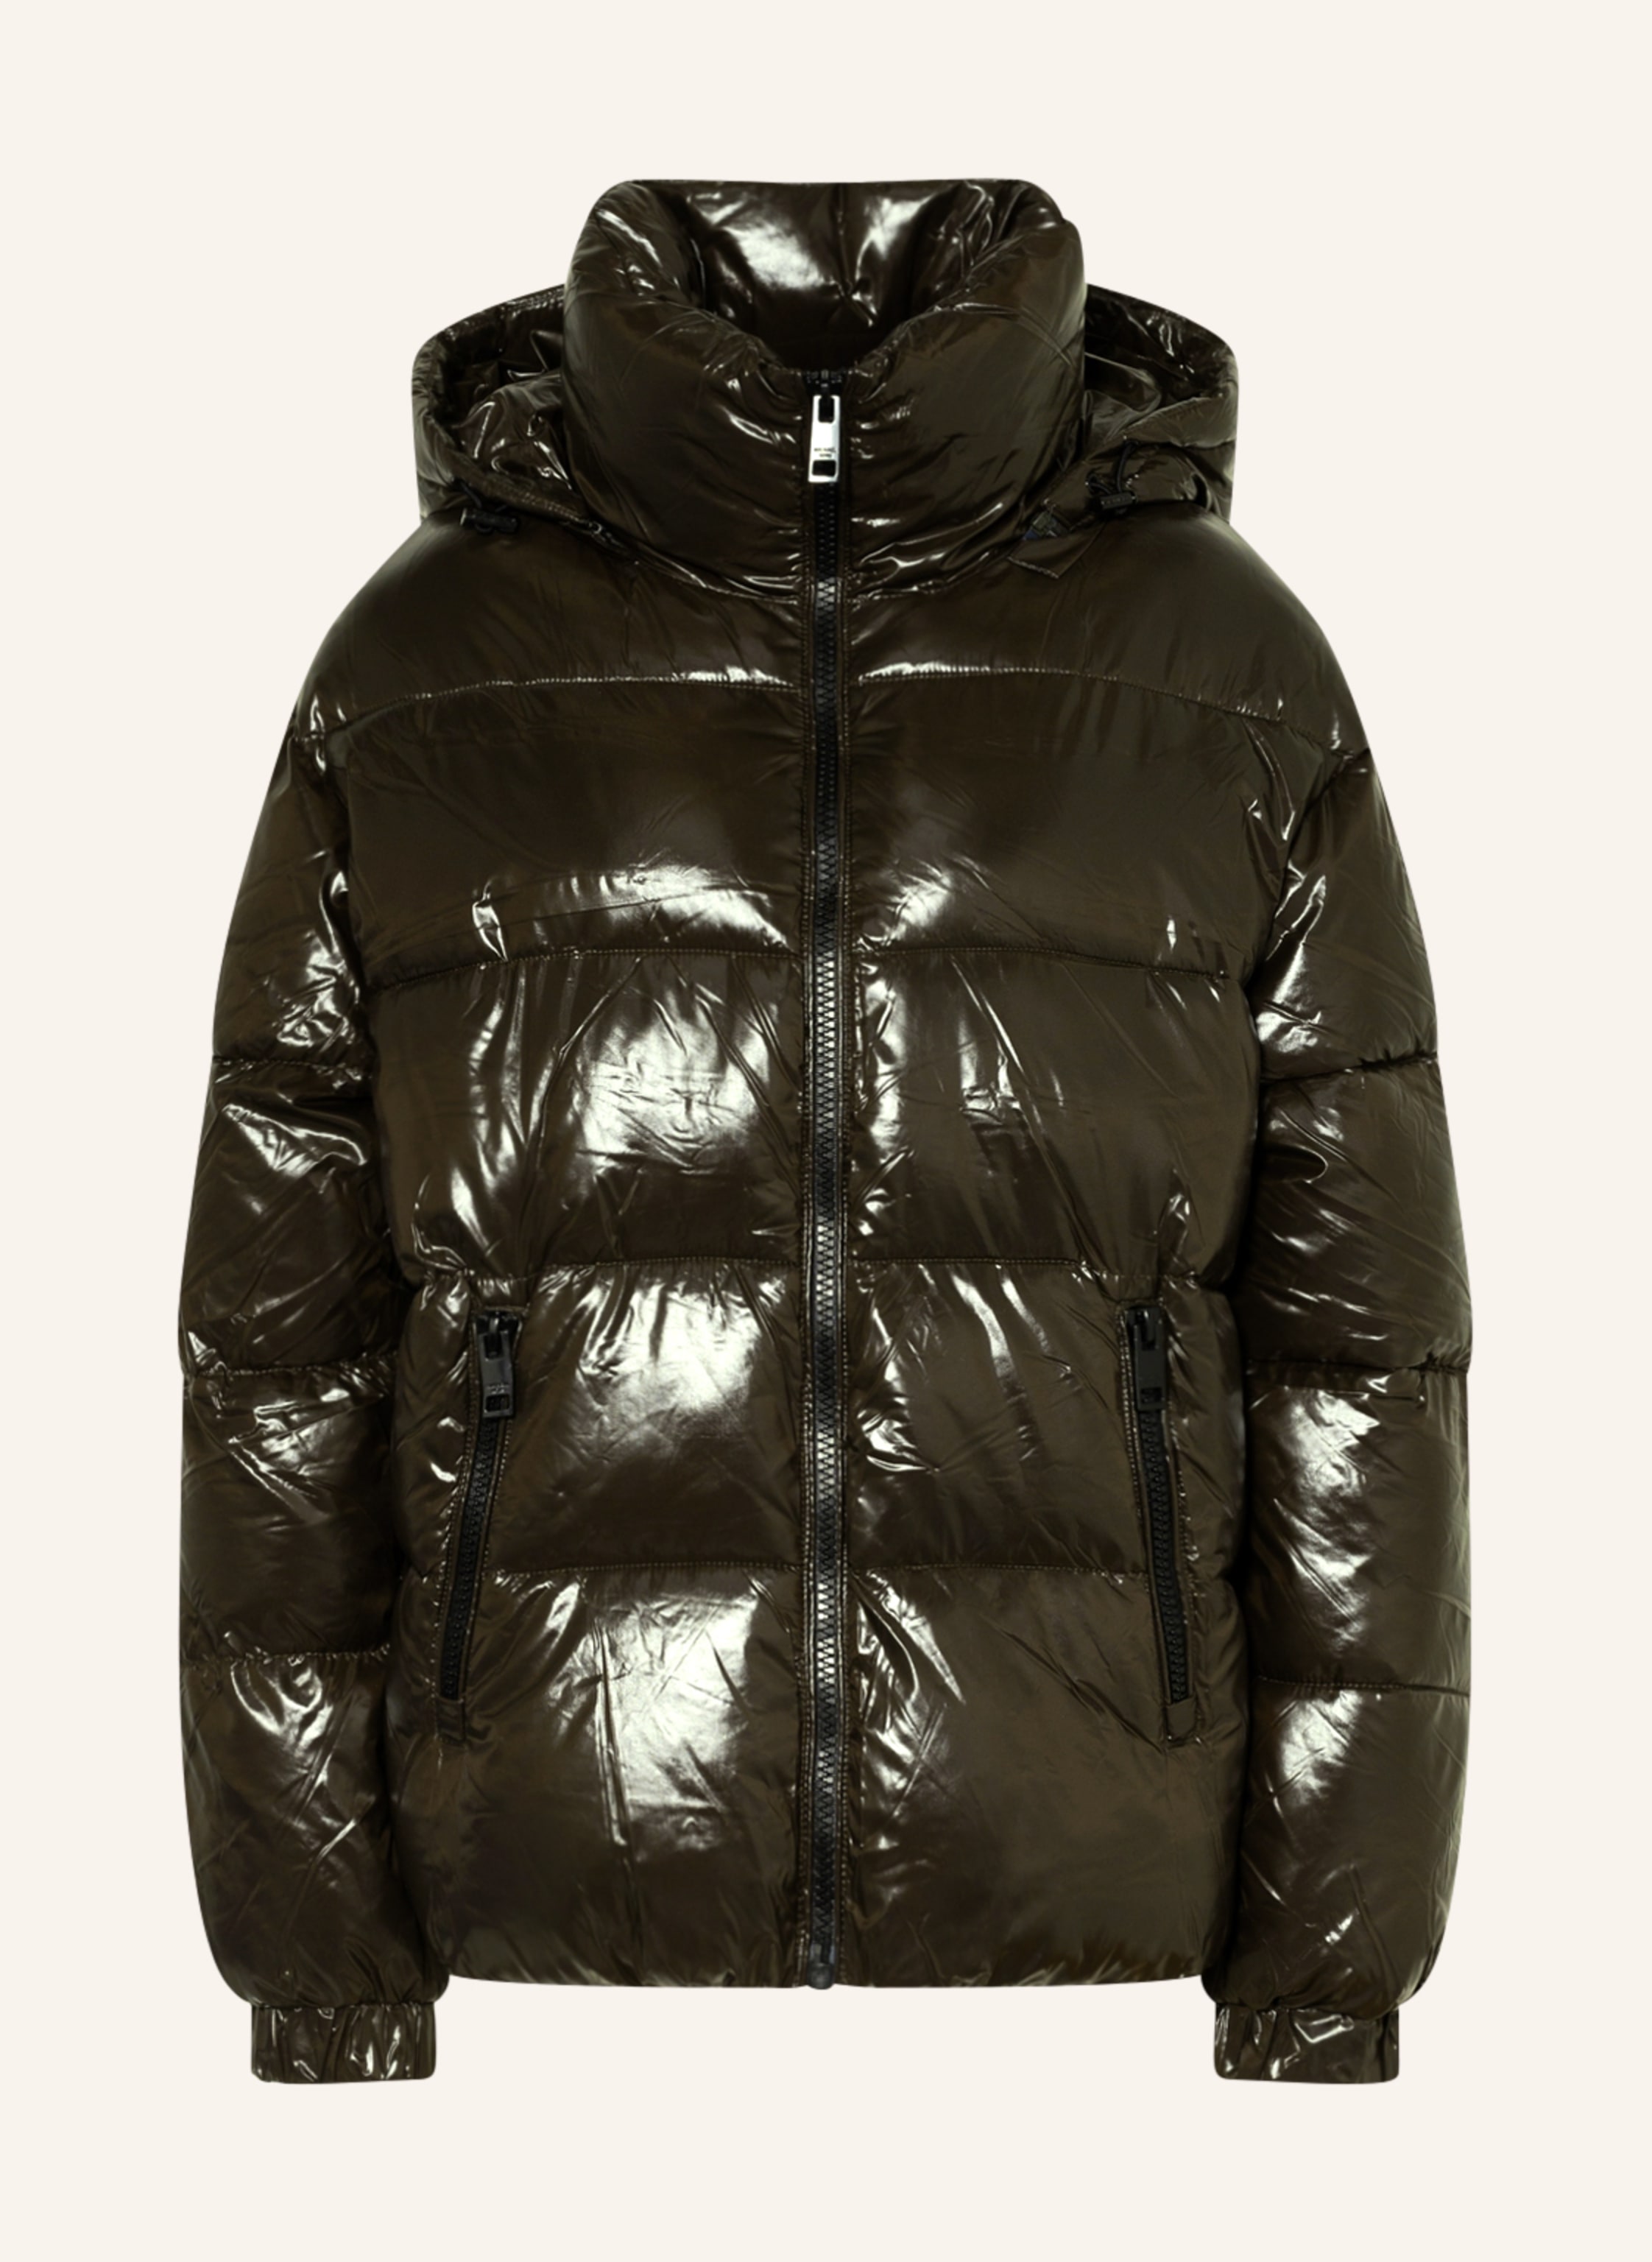 MICHAEL KORS Quilted jacket in olive | Breuninger